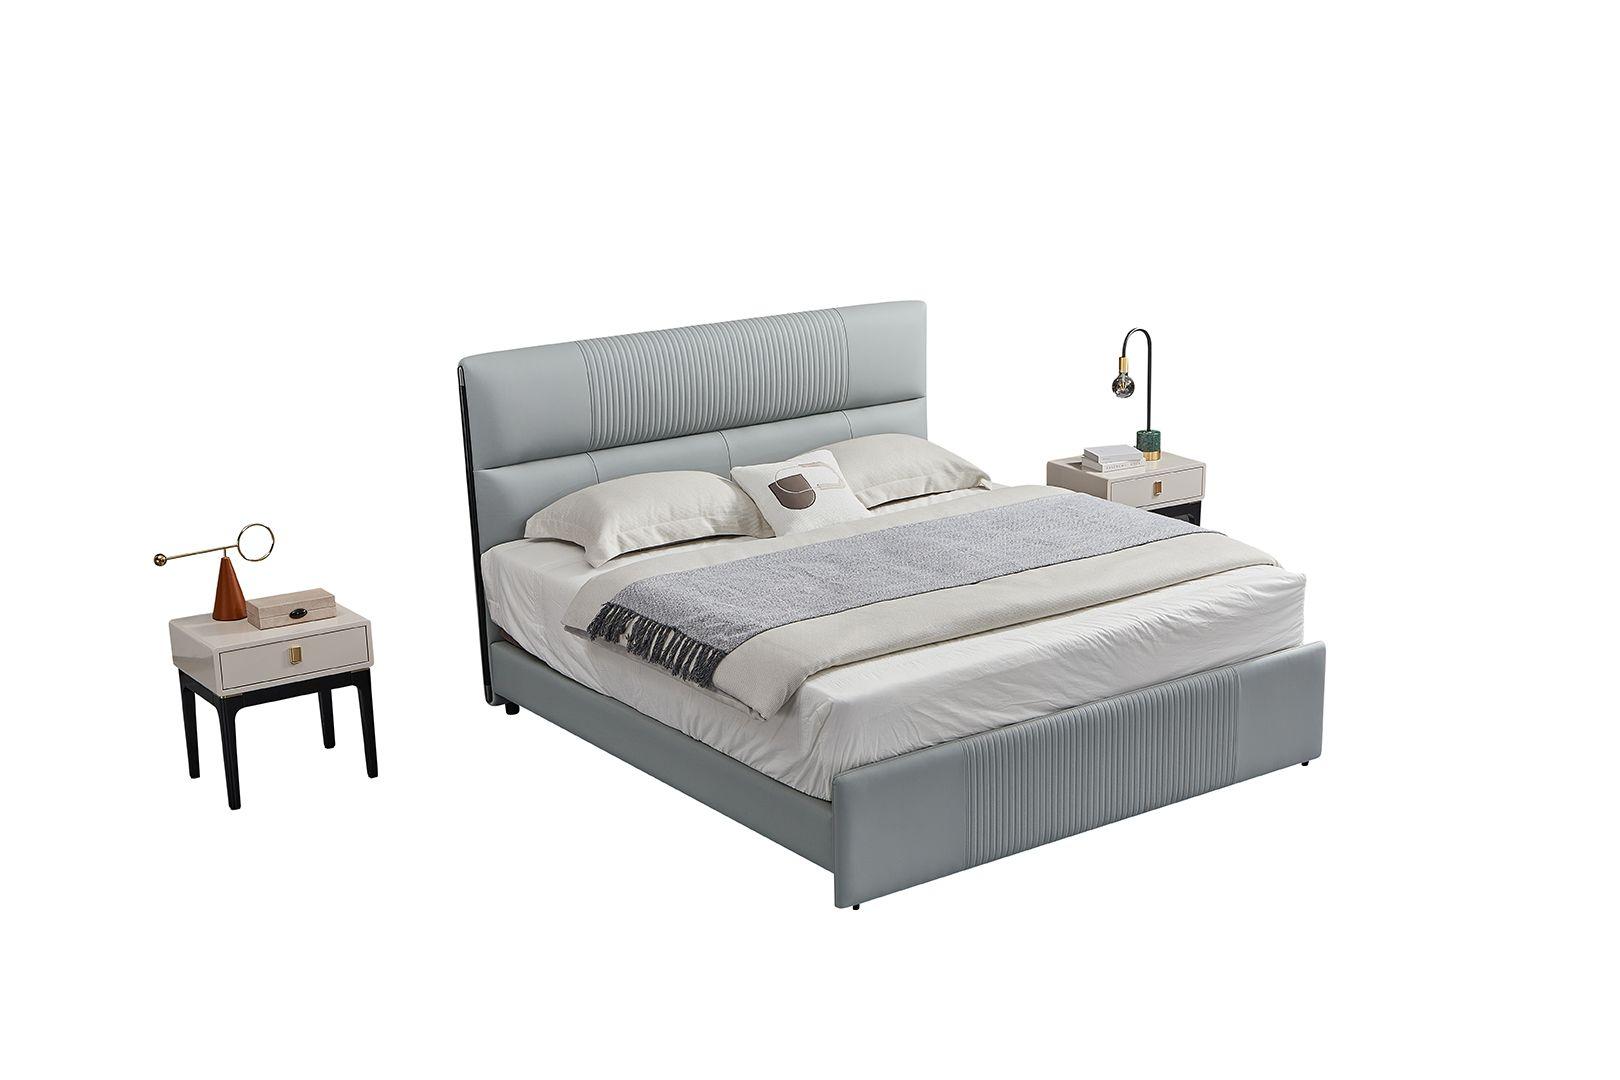 

    
American Eagle Furniture B-Y2002-EK Platform Bedroom Set Gray B-Y2002-EK-3PC
